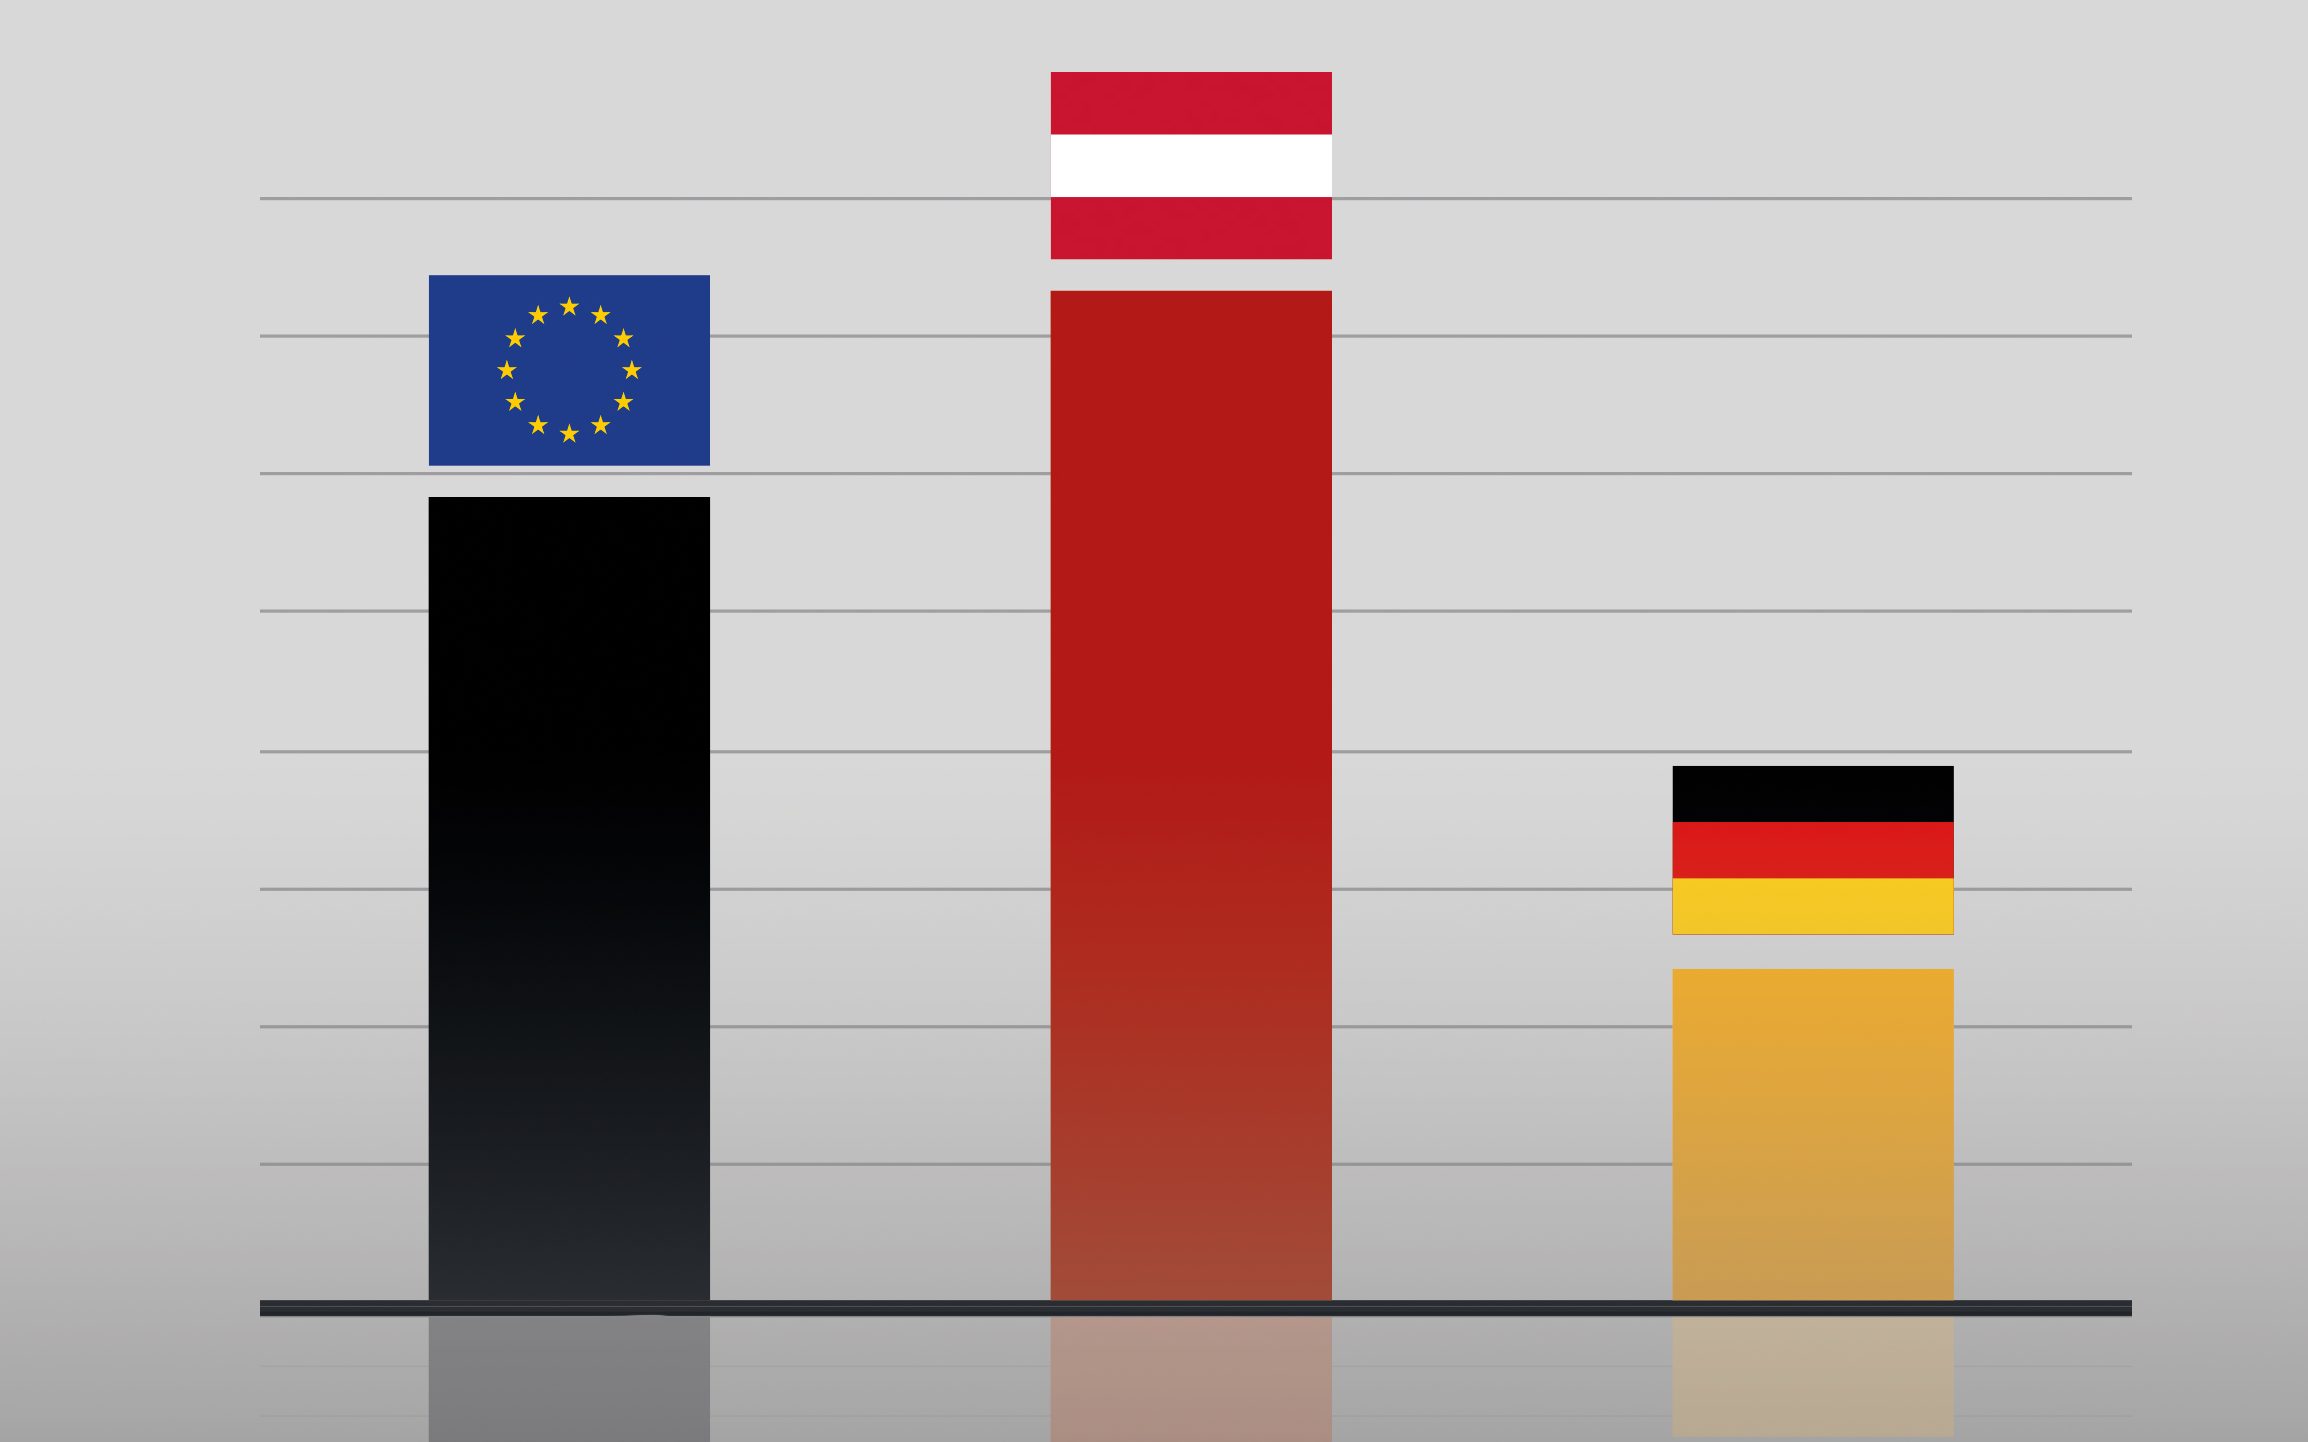 Eine Grafik mit drei Säulen, die mit der EU-, Österreich- und Deutschland-Flagge gekennzeichnet sind. 